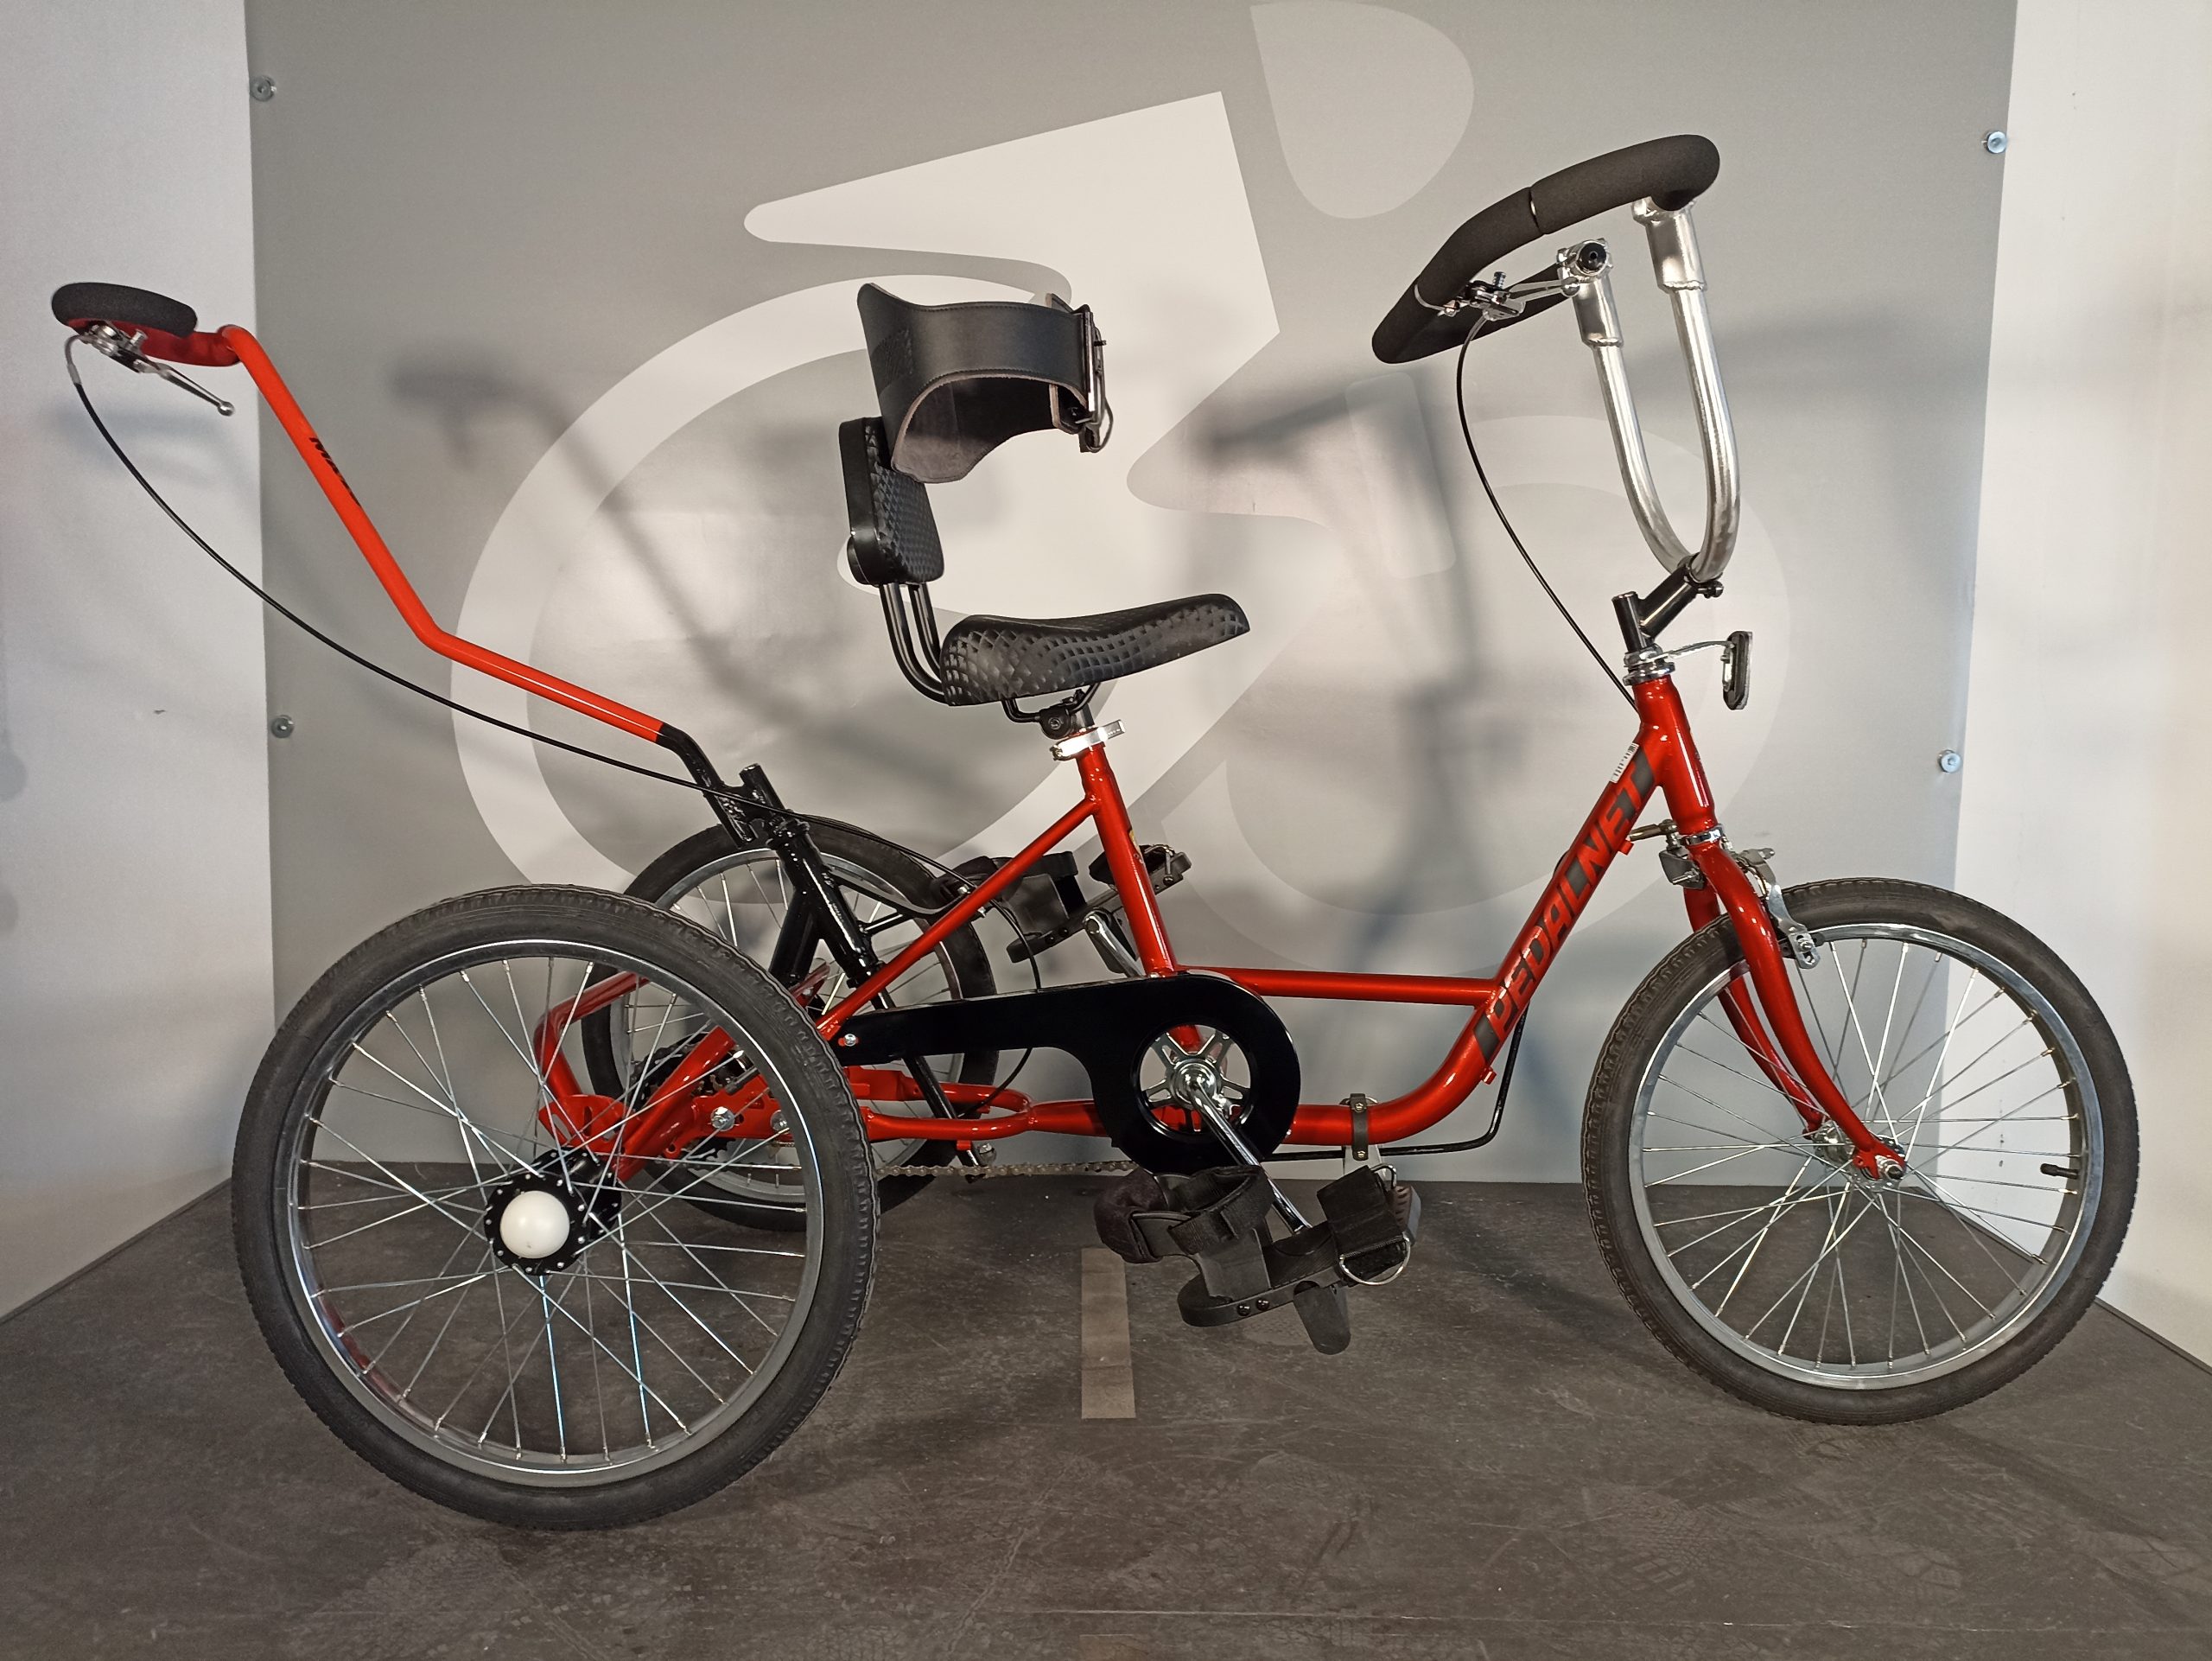 Bicicleta adaptada, bicicleta para niños con necesidades especiales, adaptaciones especiales, inclusión, movilidad, diversión, libertad, ciclismo adaptado, bicicleta personalizada, Valencia